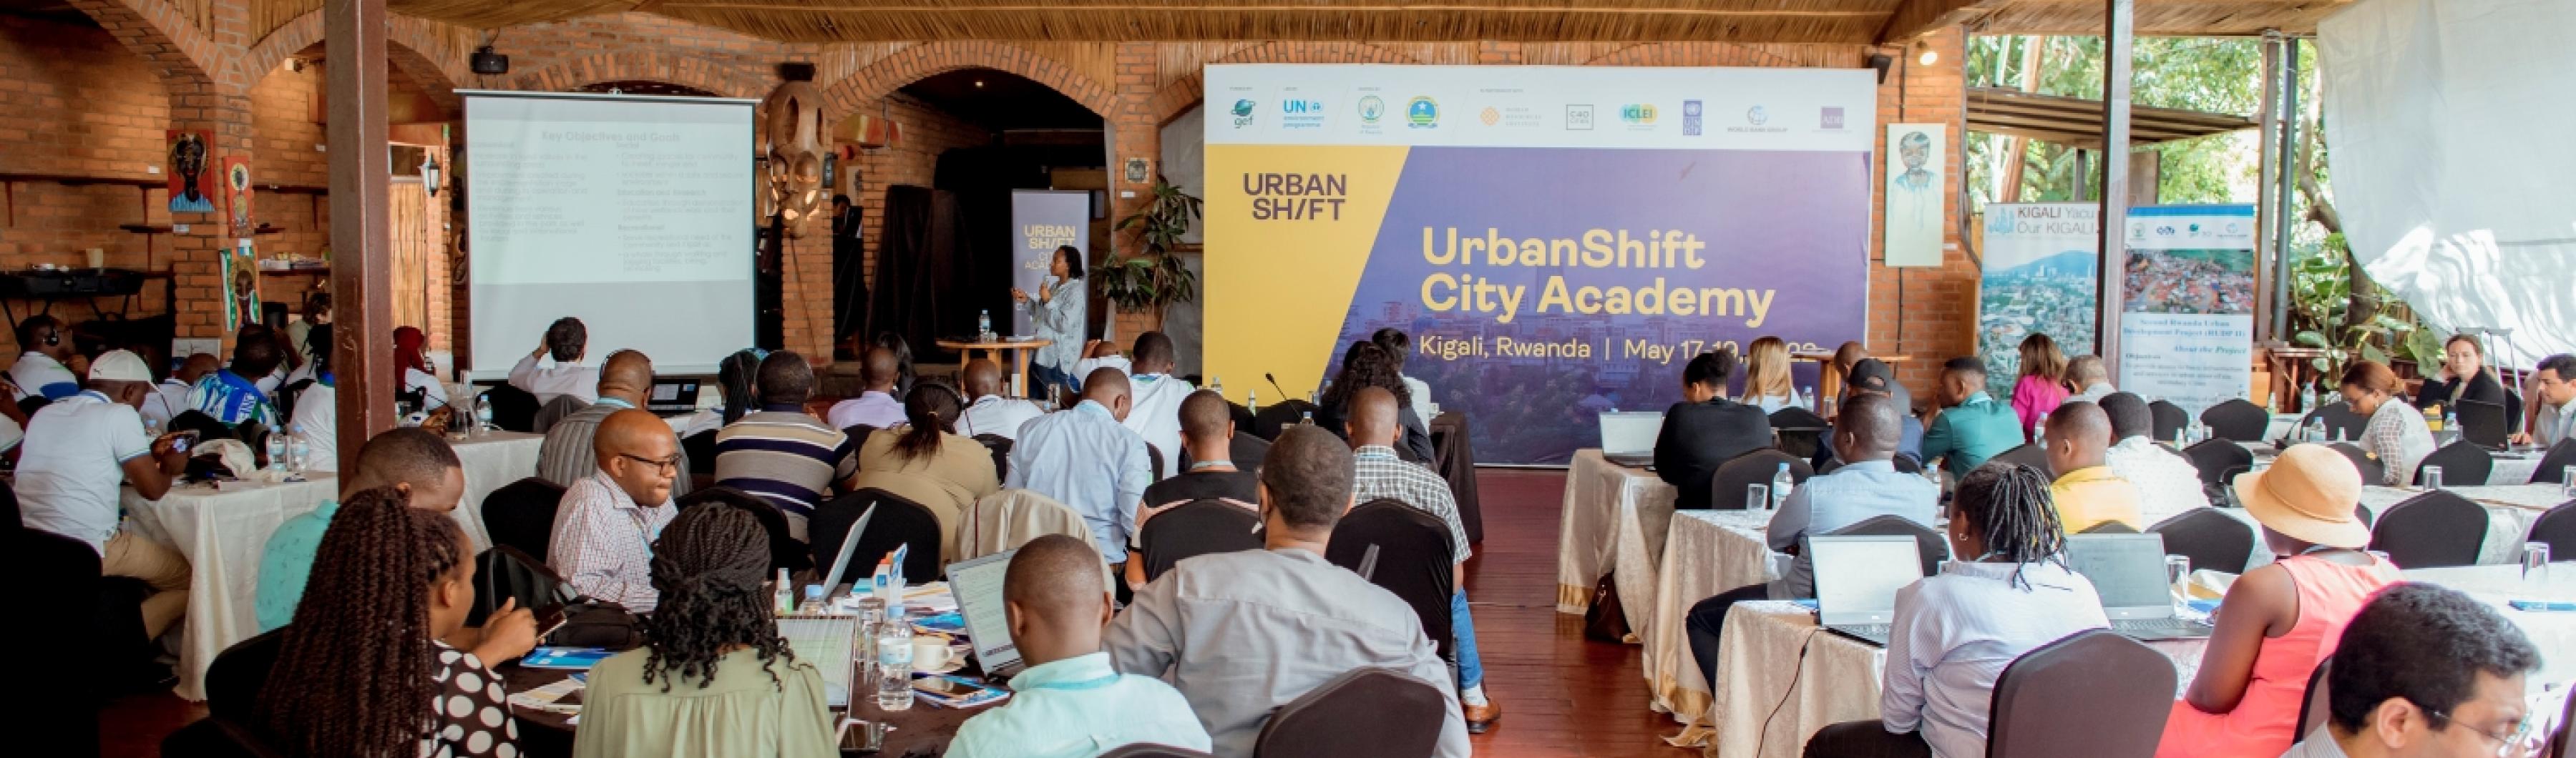 UrbanShift Academia de la ciudad de Kigali